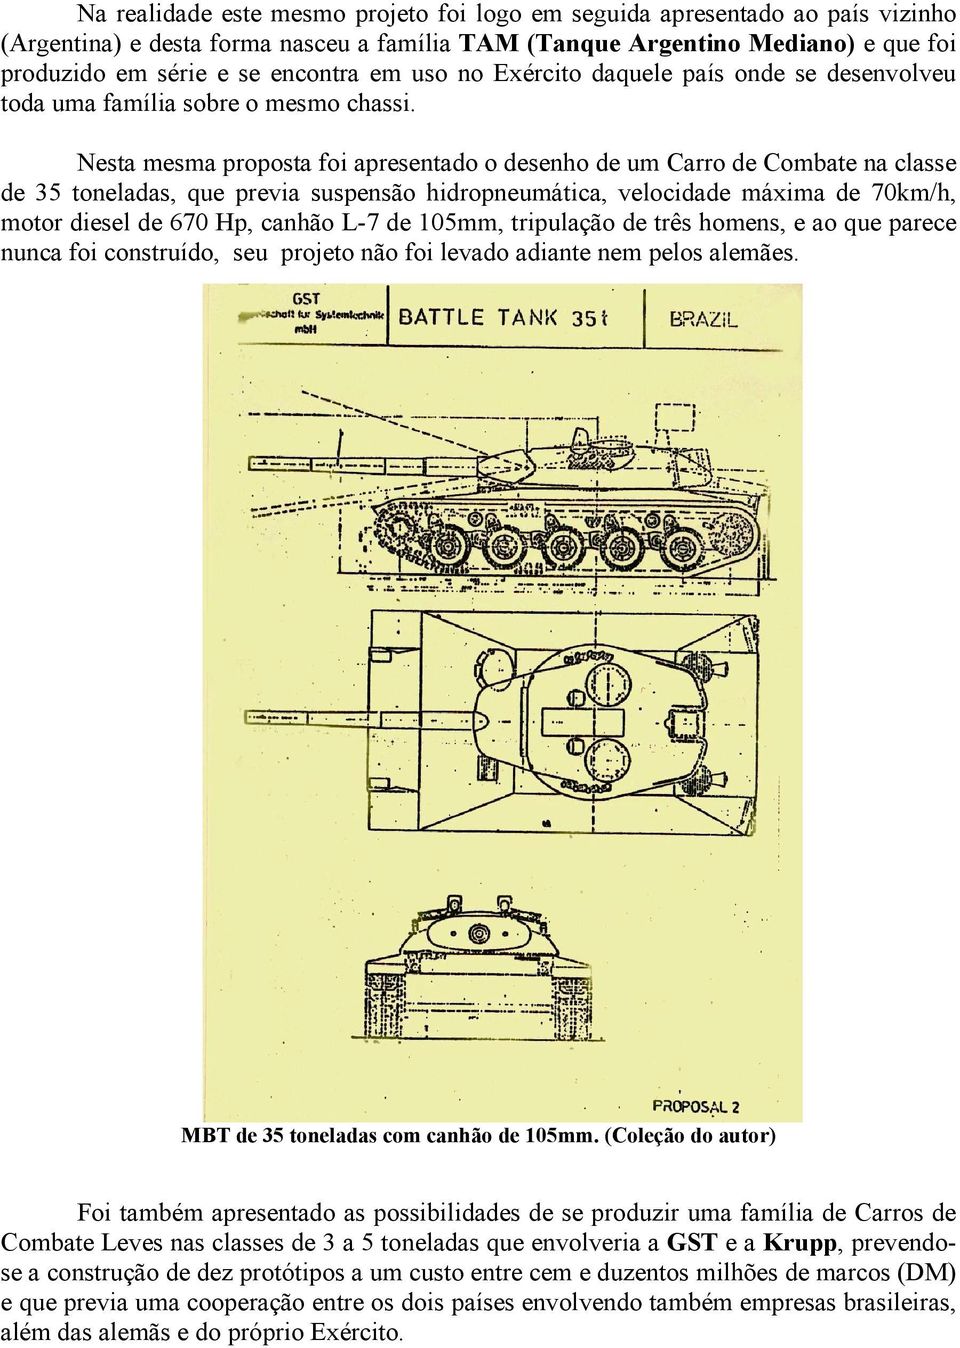 Nesta mesma proposta foi apresentado o desenho de um Carro de Combate na classe de 35 toneladas, que previa suspensão hidropneumática, velocidade máxima de 70km/h, motor diesel de 670 Hp, canhão L-7